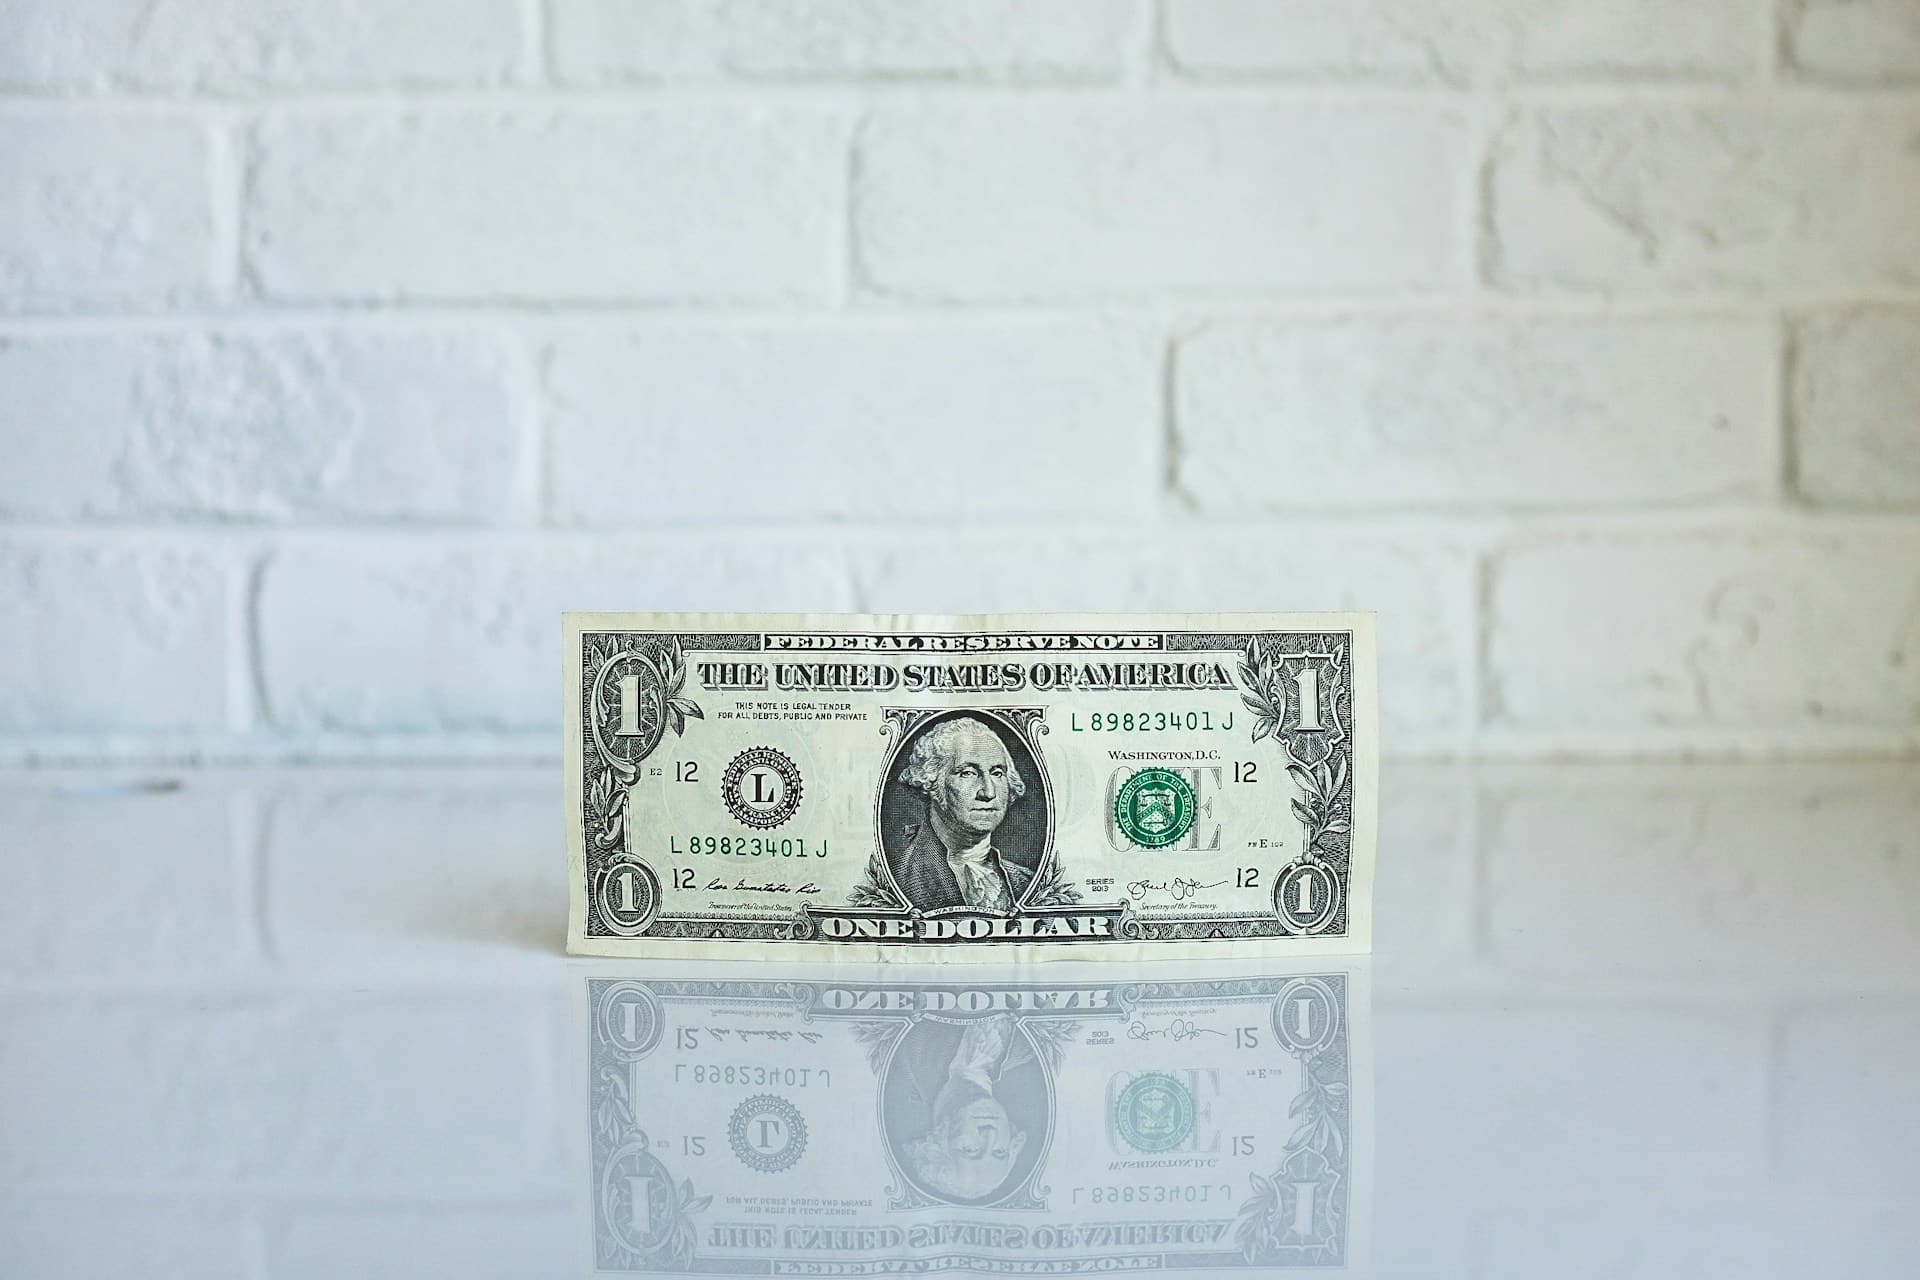 یک اسکناس تک دلاری با چهره جورج واشنگتن روی آن، در پس زمینه دیوار آجری سفید